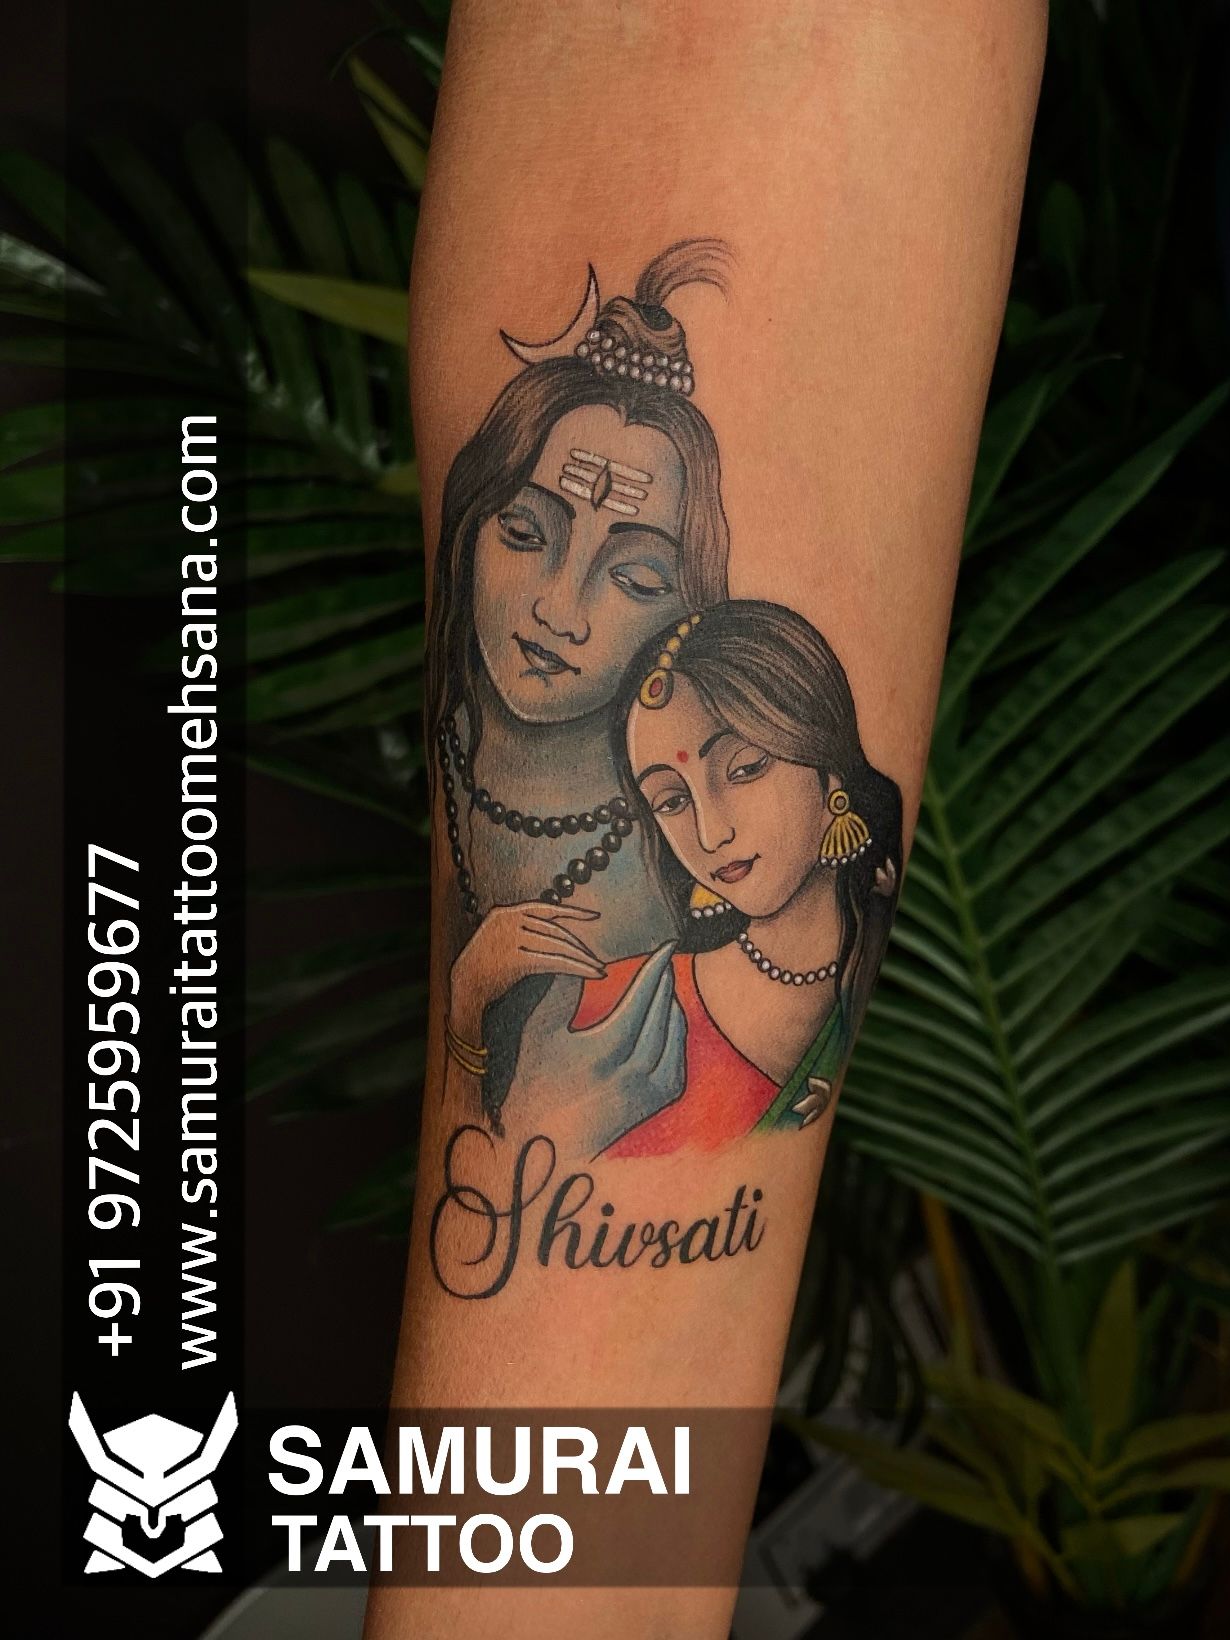 TAVAS Tattoo & ART - Shiva parvati black and grey Tattoo. Tattoo by  @sachin_basappa at @_tavas.tattoo_ Mysore India. . . . #shivatattoo  #sleevetattoo #blackandgreytattoo #concepttattoo #customtattoos  #tavastattoomysore #inkedintavas #mysoreink ...